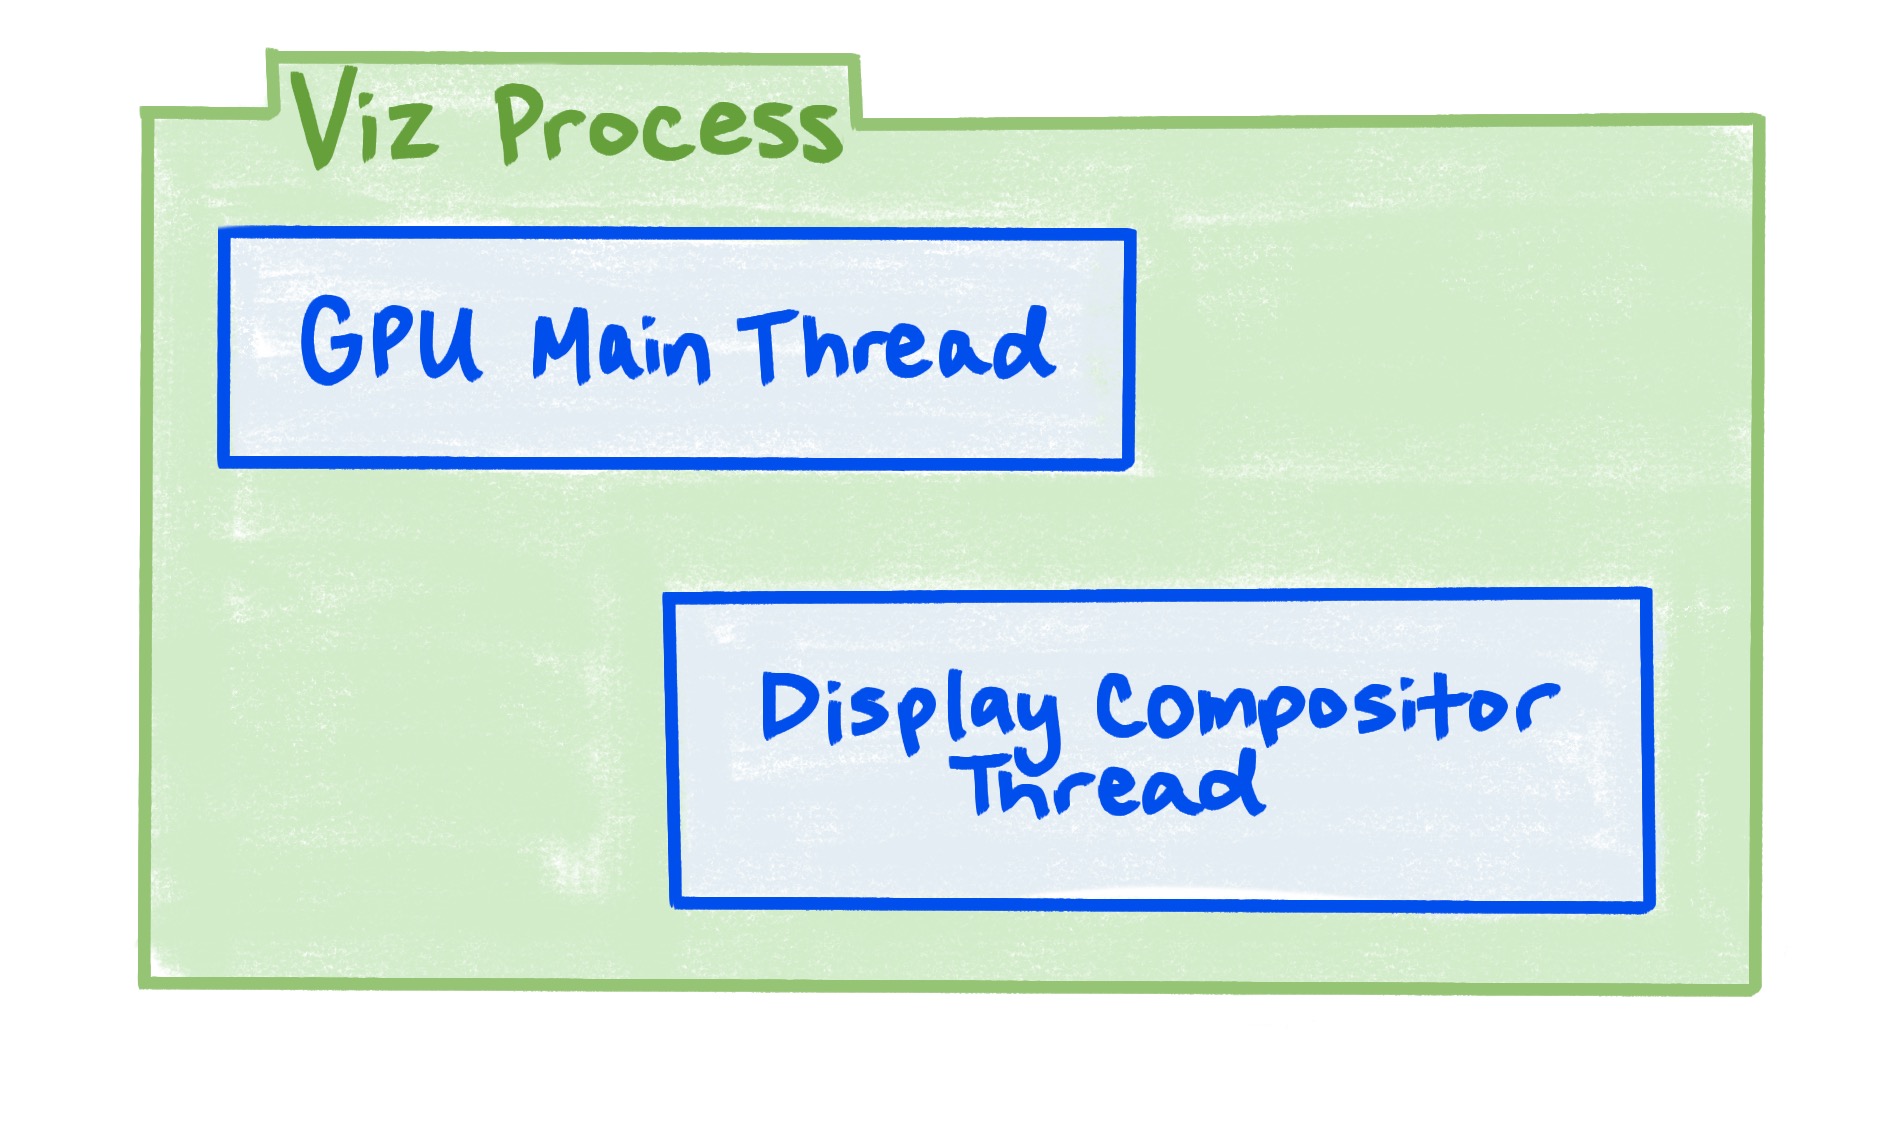 Diagram pokazujący, że proces Viz zawiera wątek główny GPU i wątek kompozytora wyświetlacza.